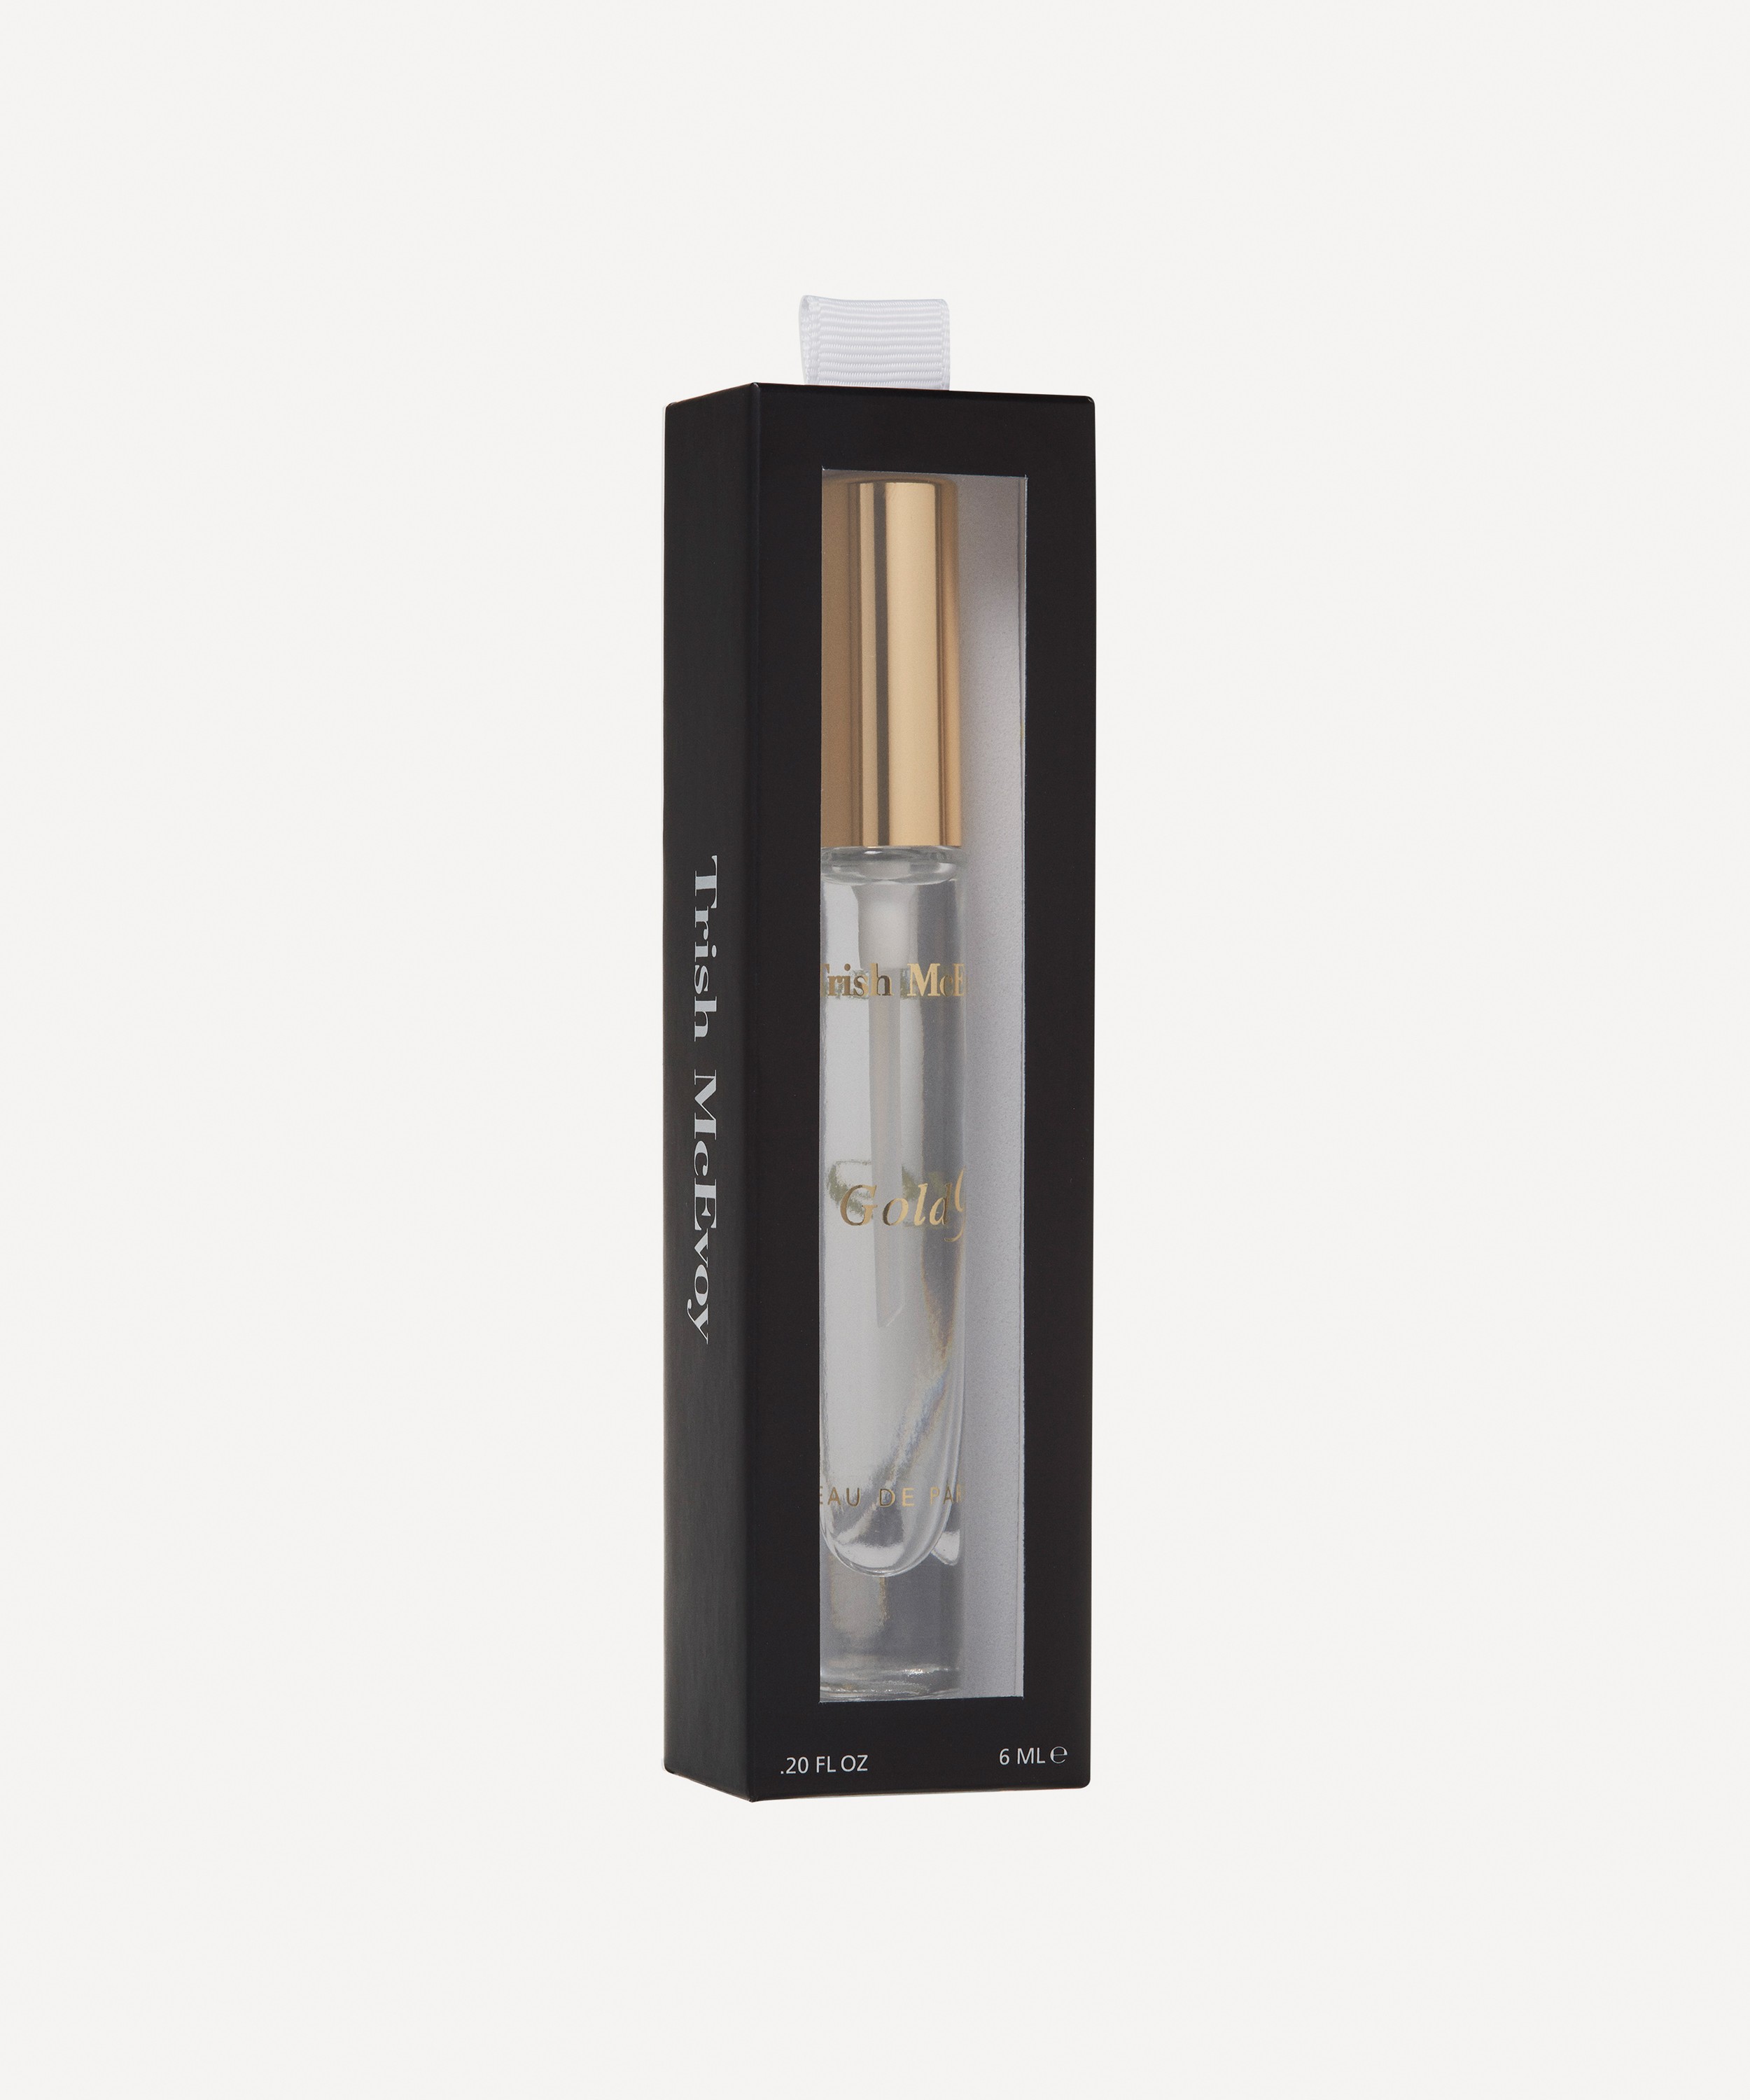 Trish McEvoy - Gold 9 Eau de Parfum Refillable Pen Spray 6ml image number 3